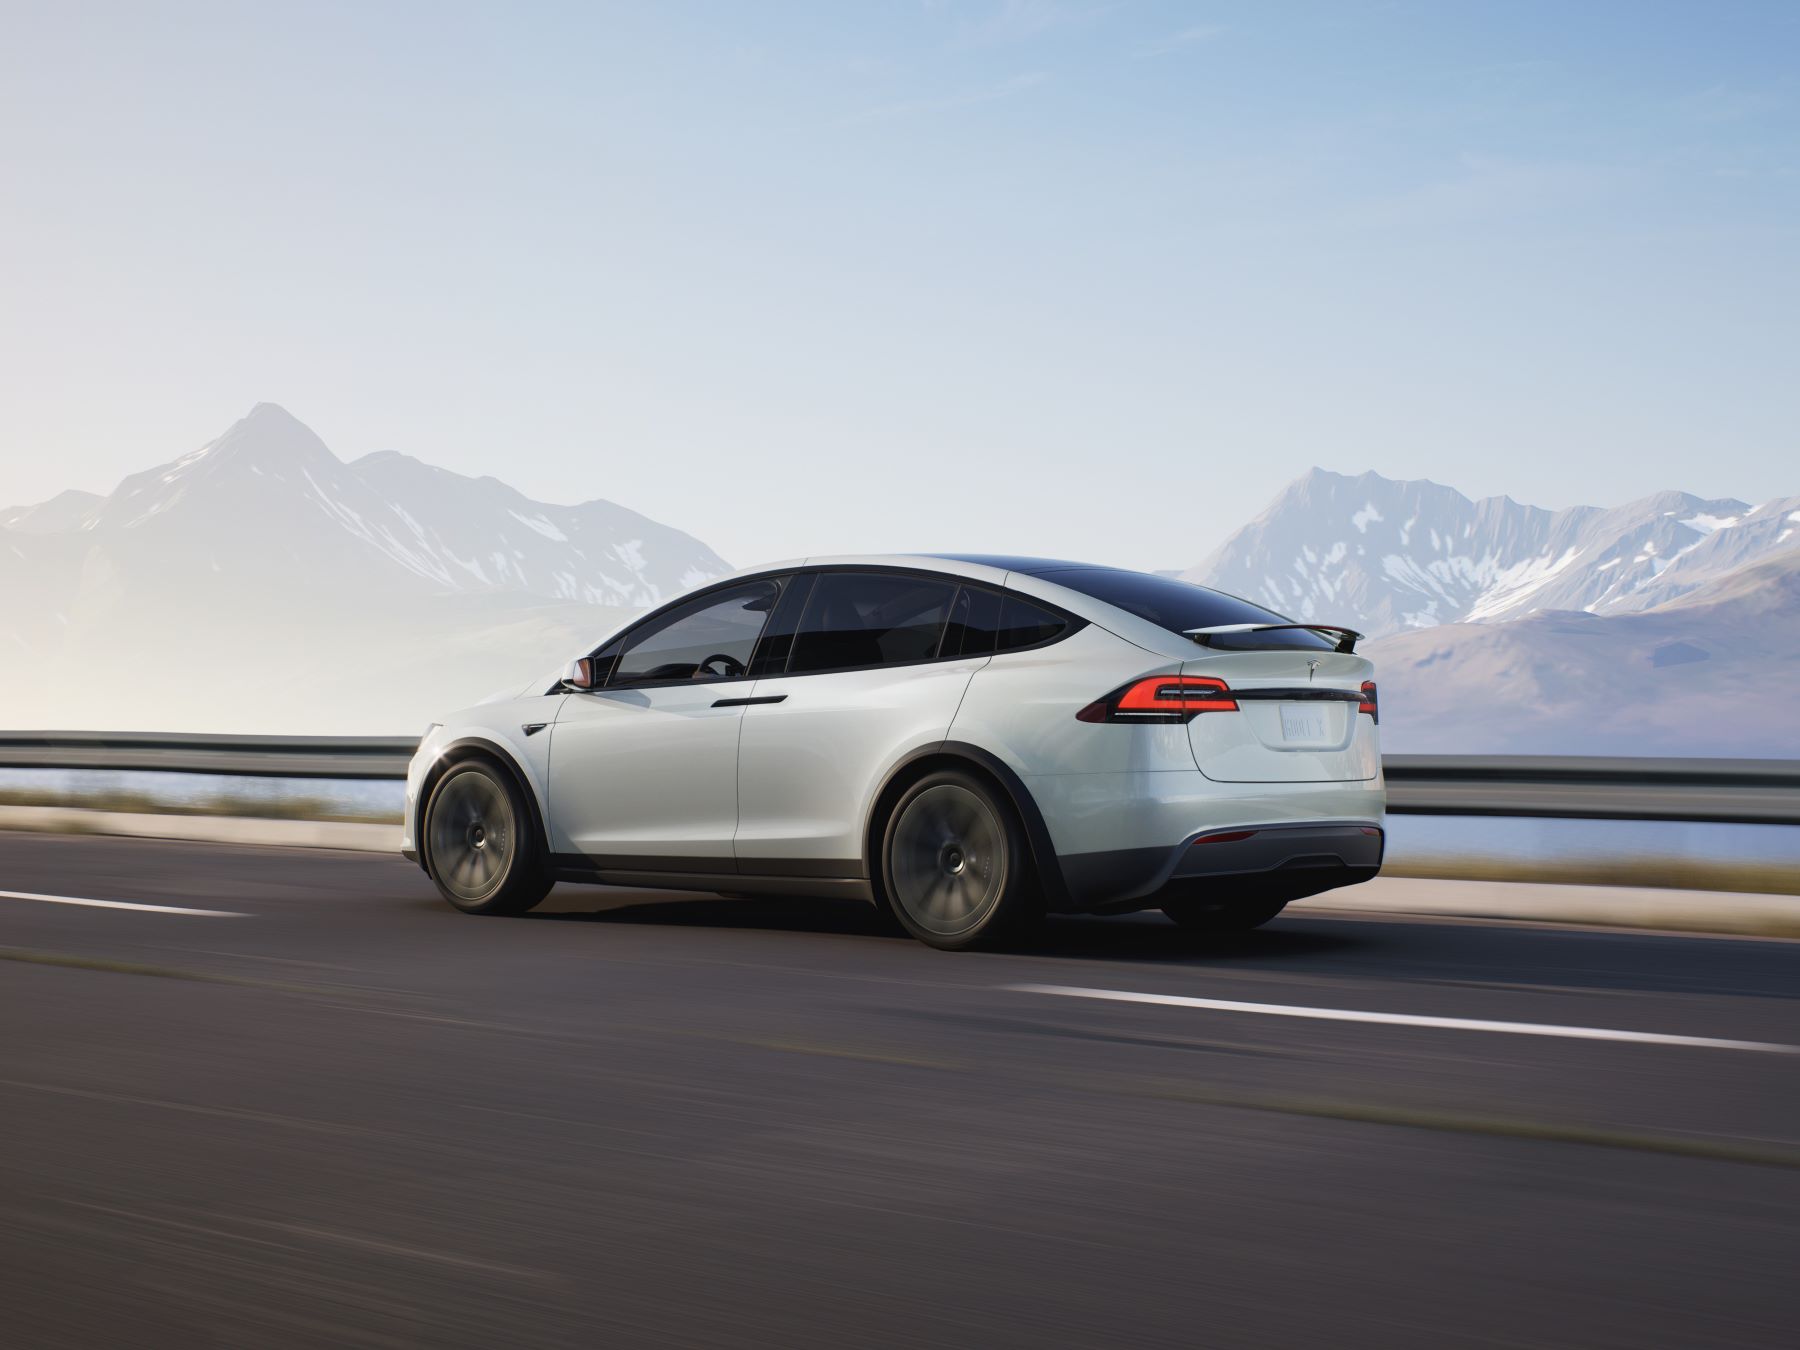 VUS compact tout électrique Tesla Model X 2022 en blanc, prise de vue latérale, roulant sur une autoroute près d'une chaîne de montagnes enneigée